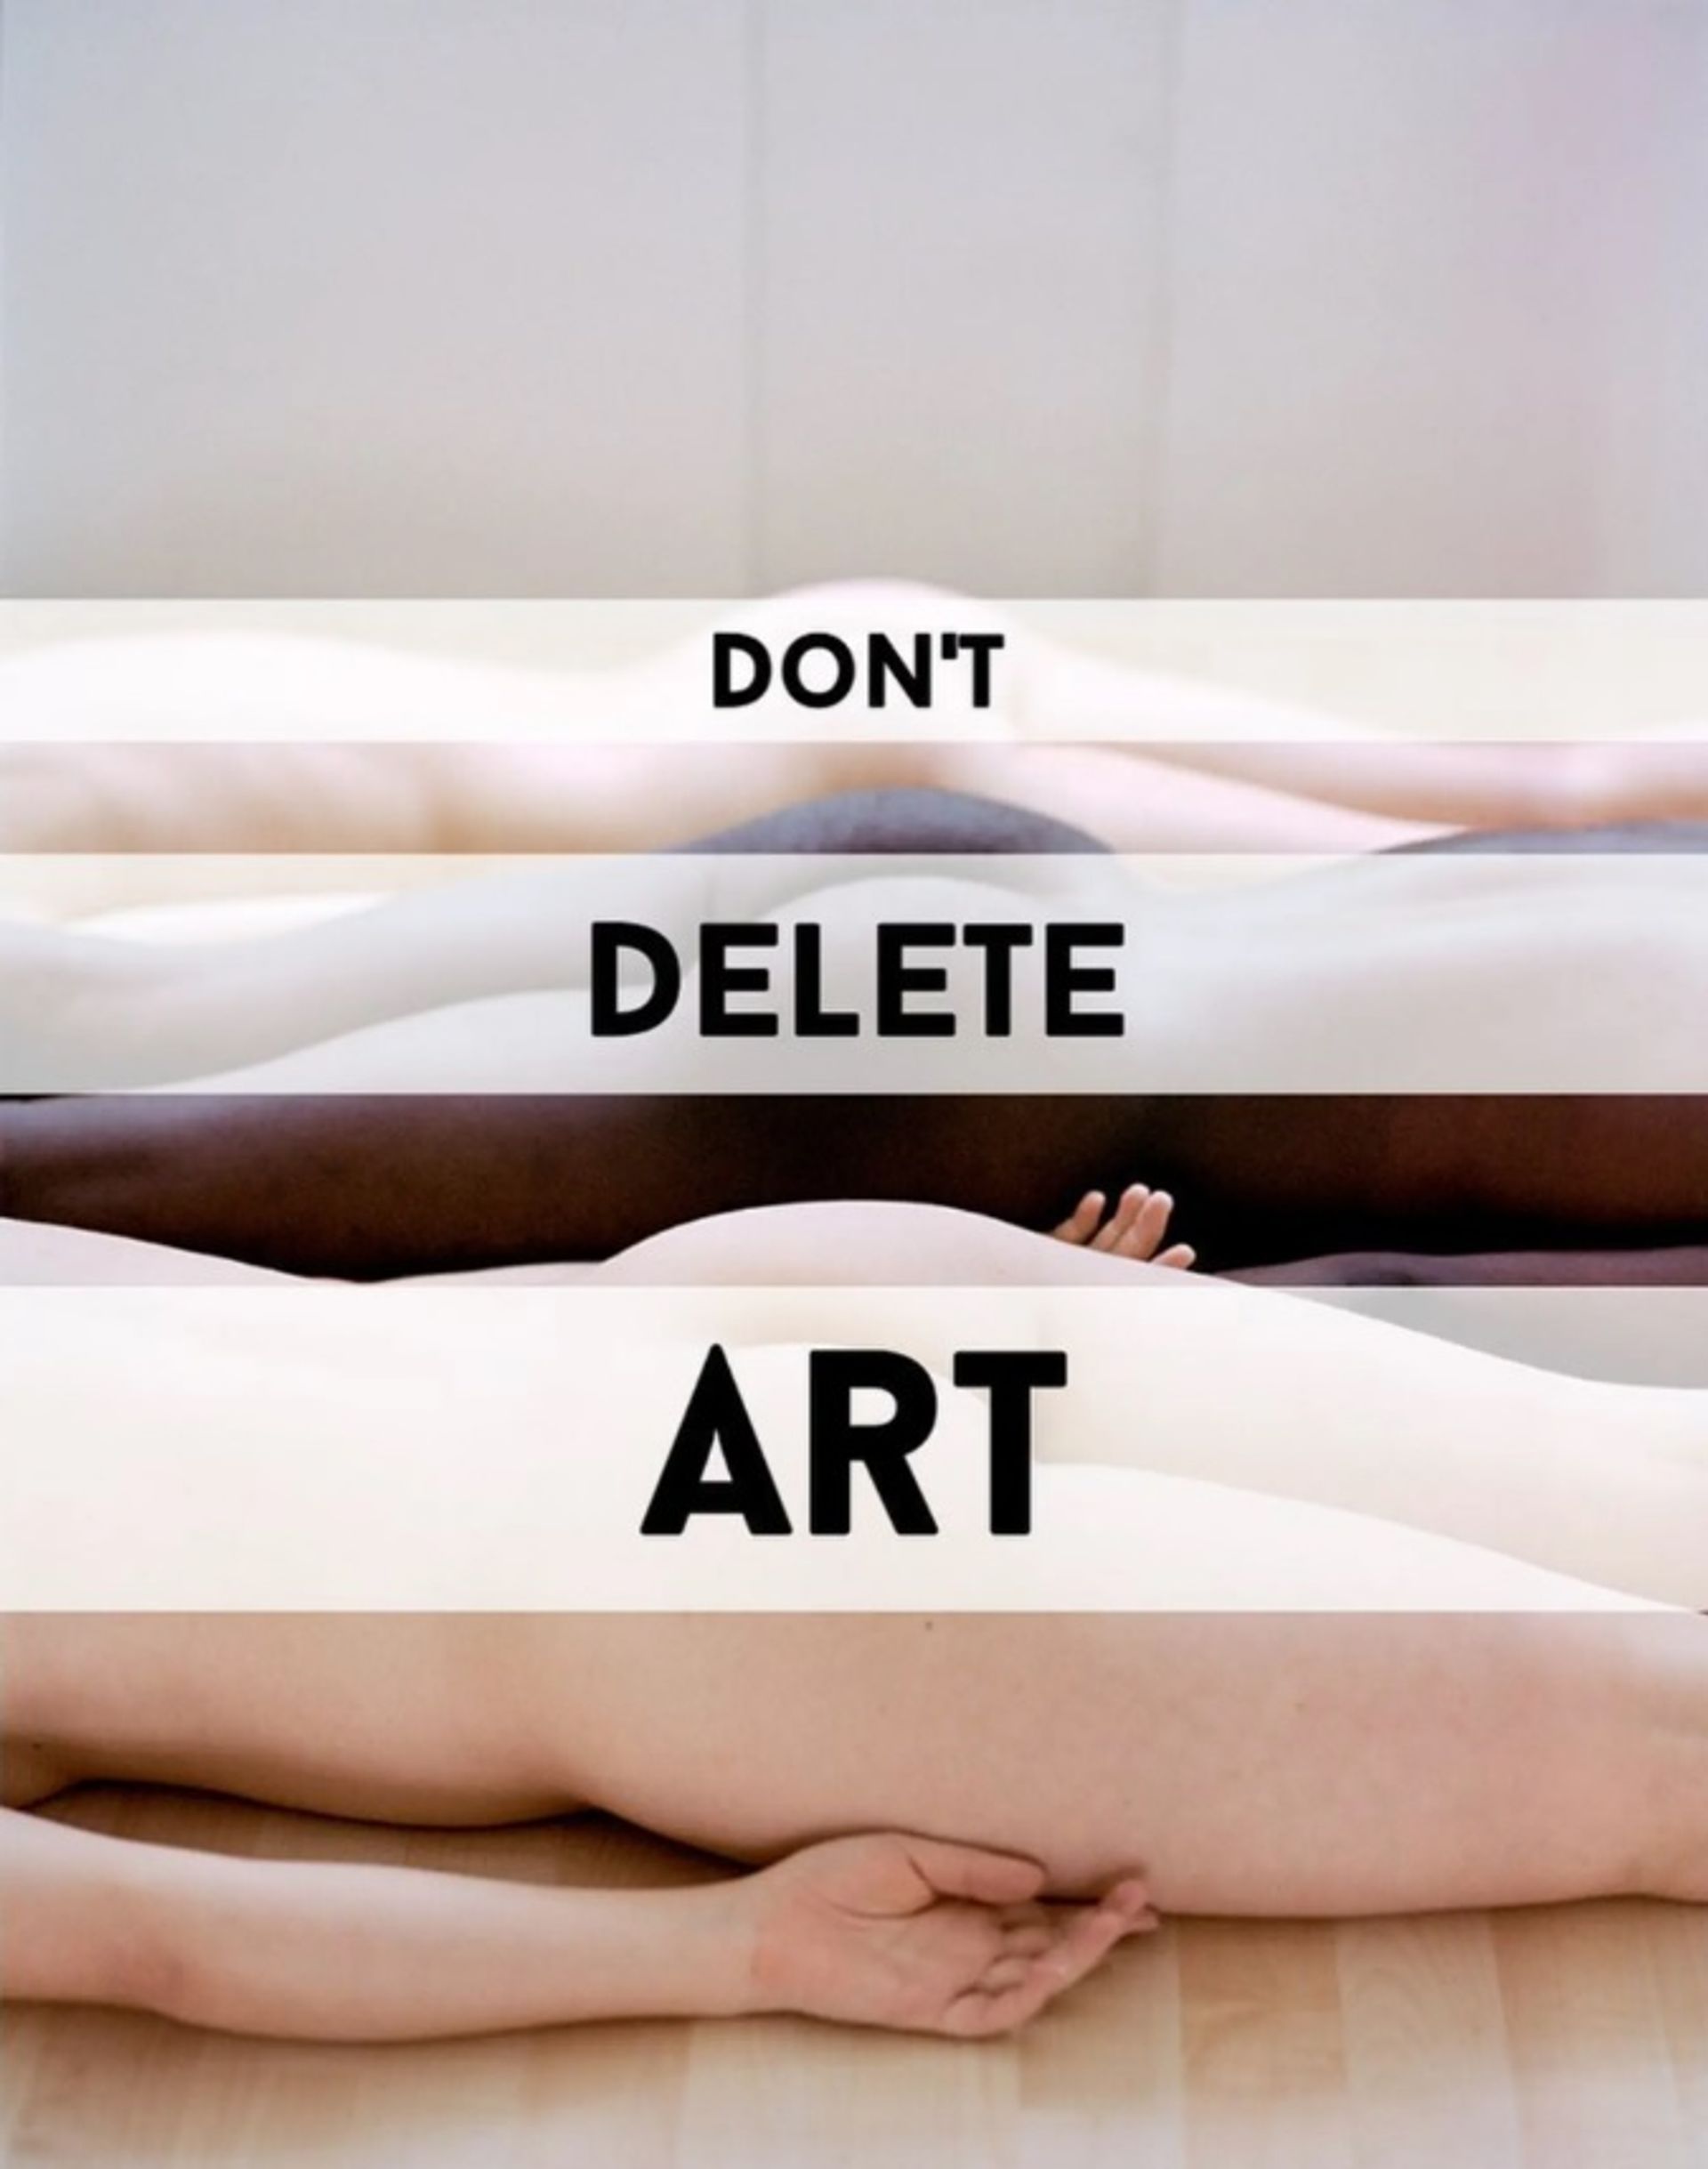 תמונה מתוך חשבון האינסטגרם של קמפיין Don't Delete Art @dontdelete.art

תצלום מקורי מאת AdeY, שונה עבור מסע הפרסום של Don't Delete Art